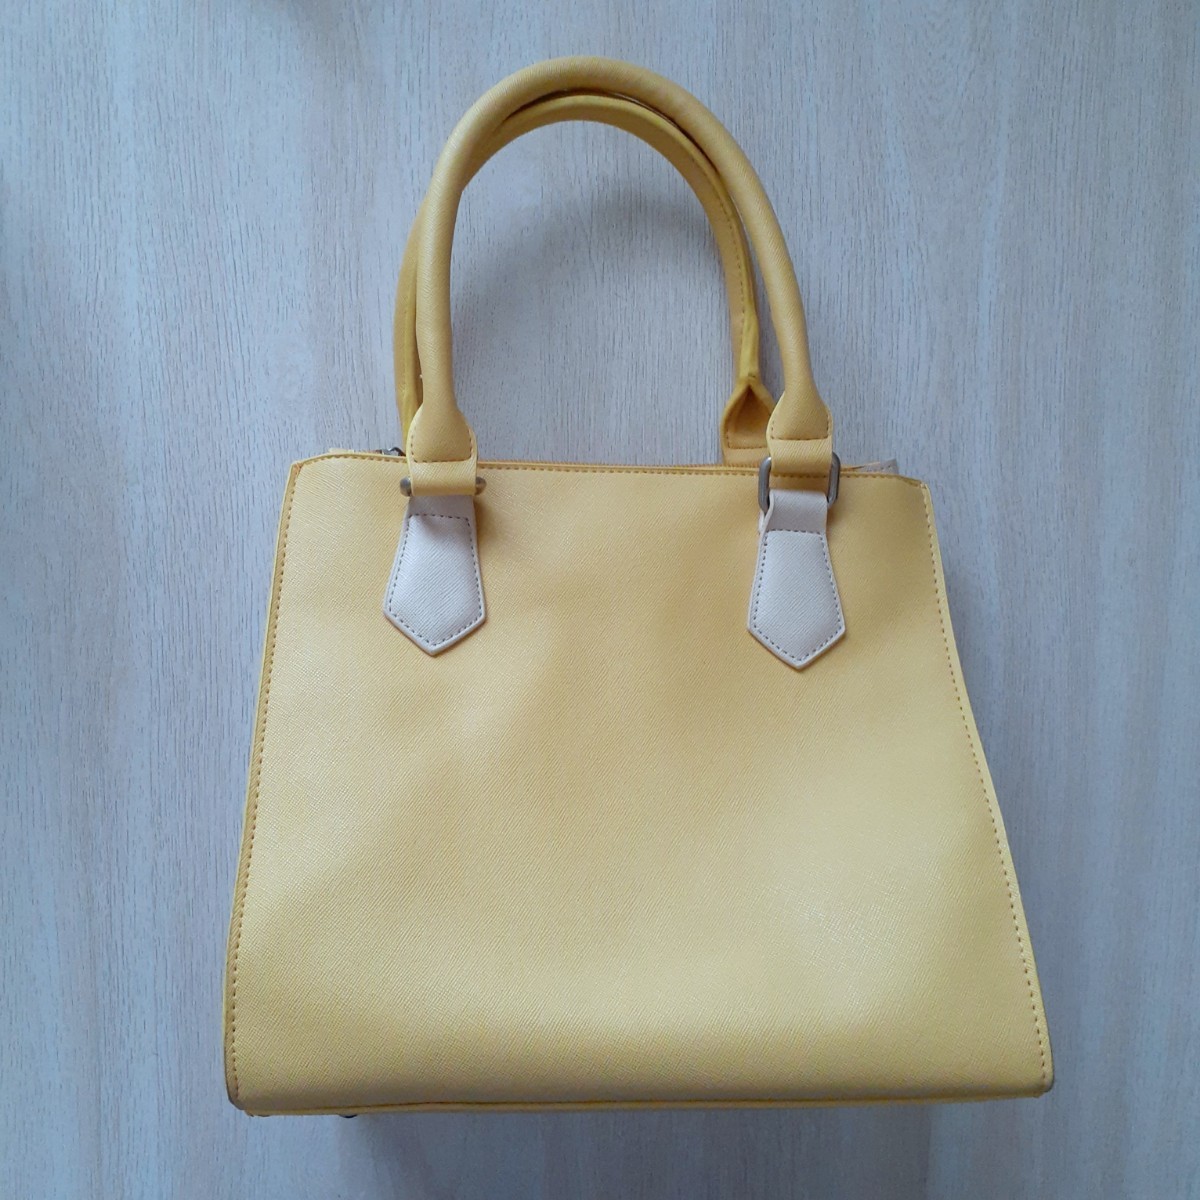 ELLE L * bag handbag shoulder bag lady's bag { yellow }ito gold 